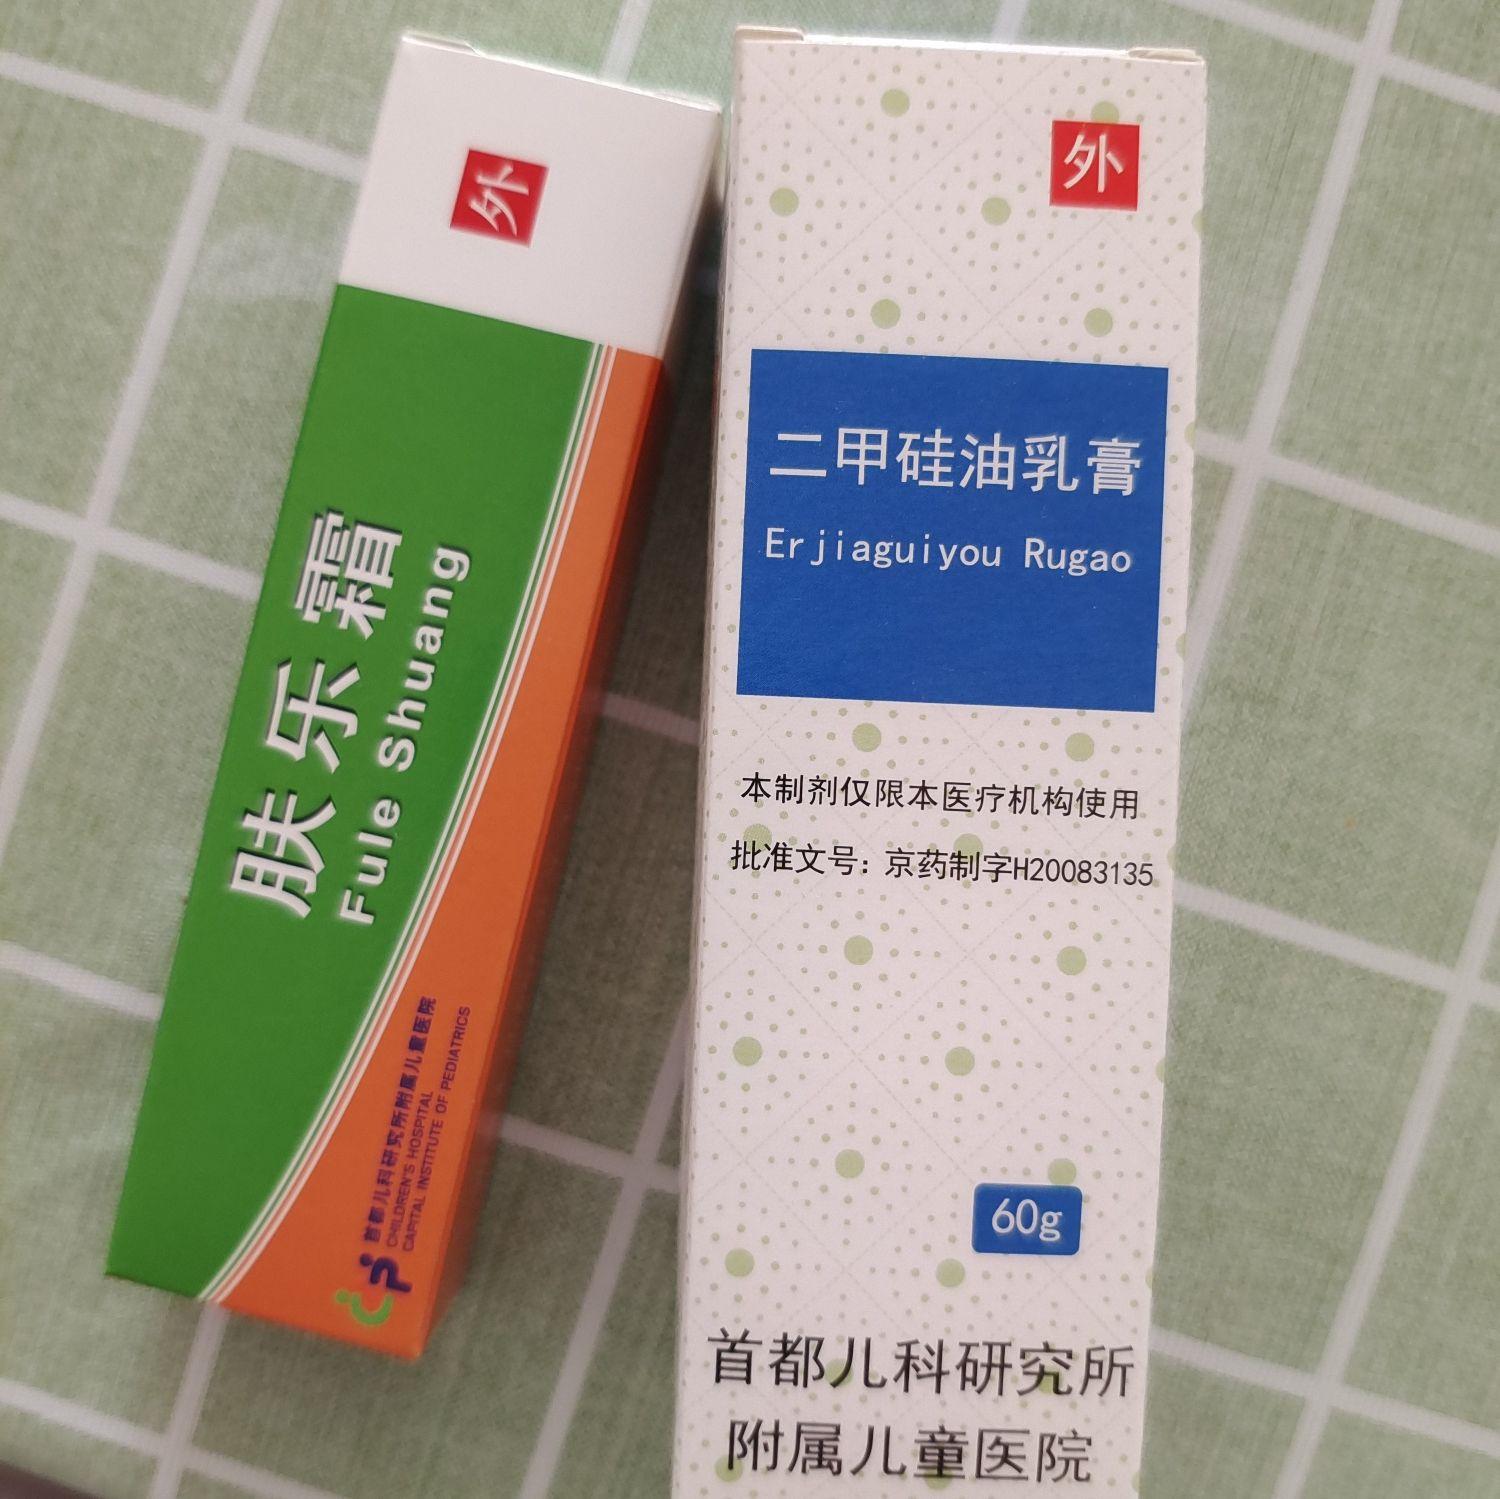 北京儿研所肤乐霜和钙的样子?是只能在儿研所里有吗?肤乐霜多少钱?